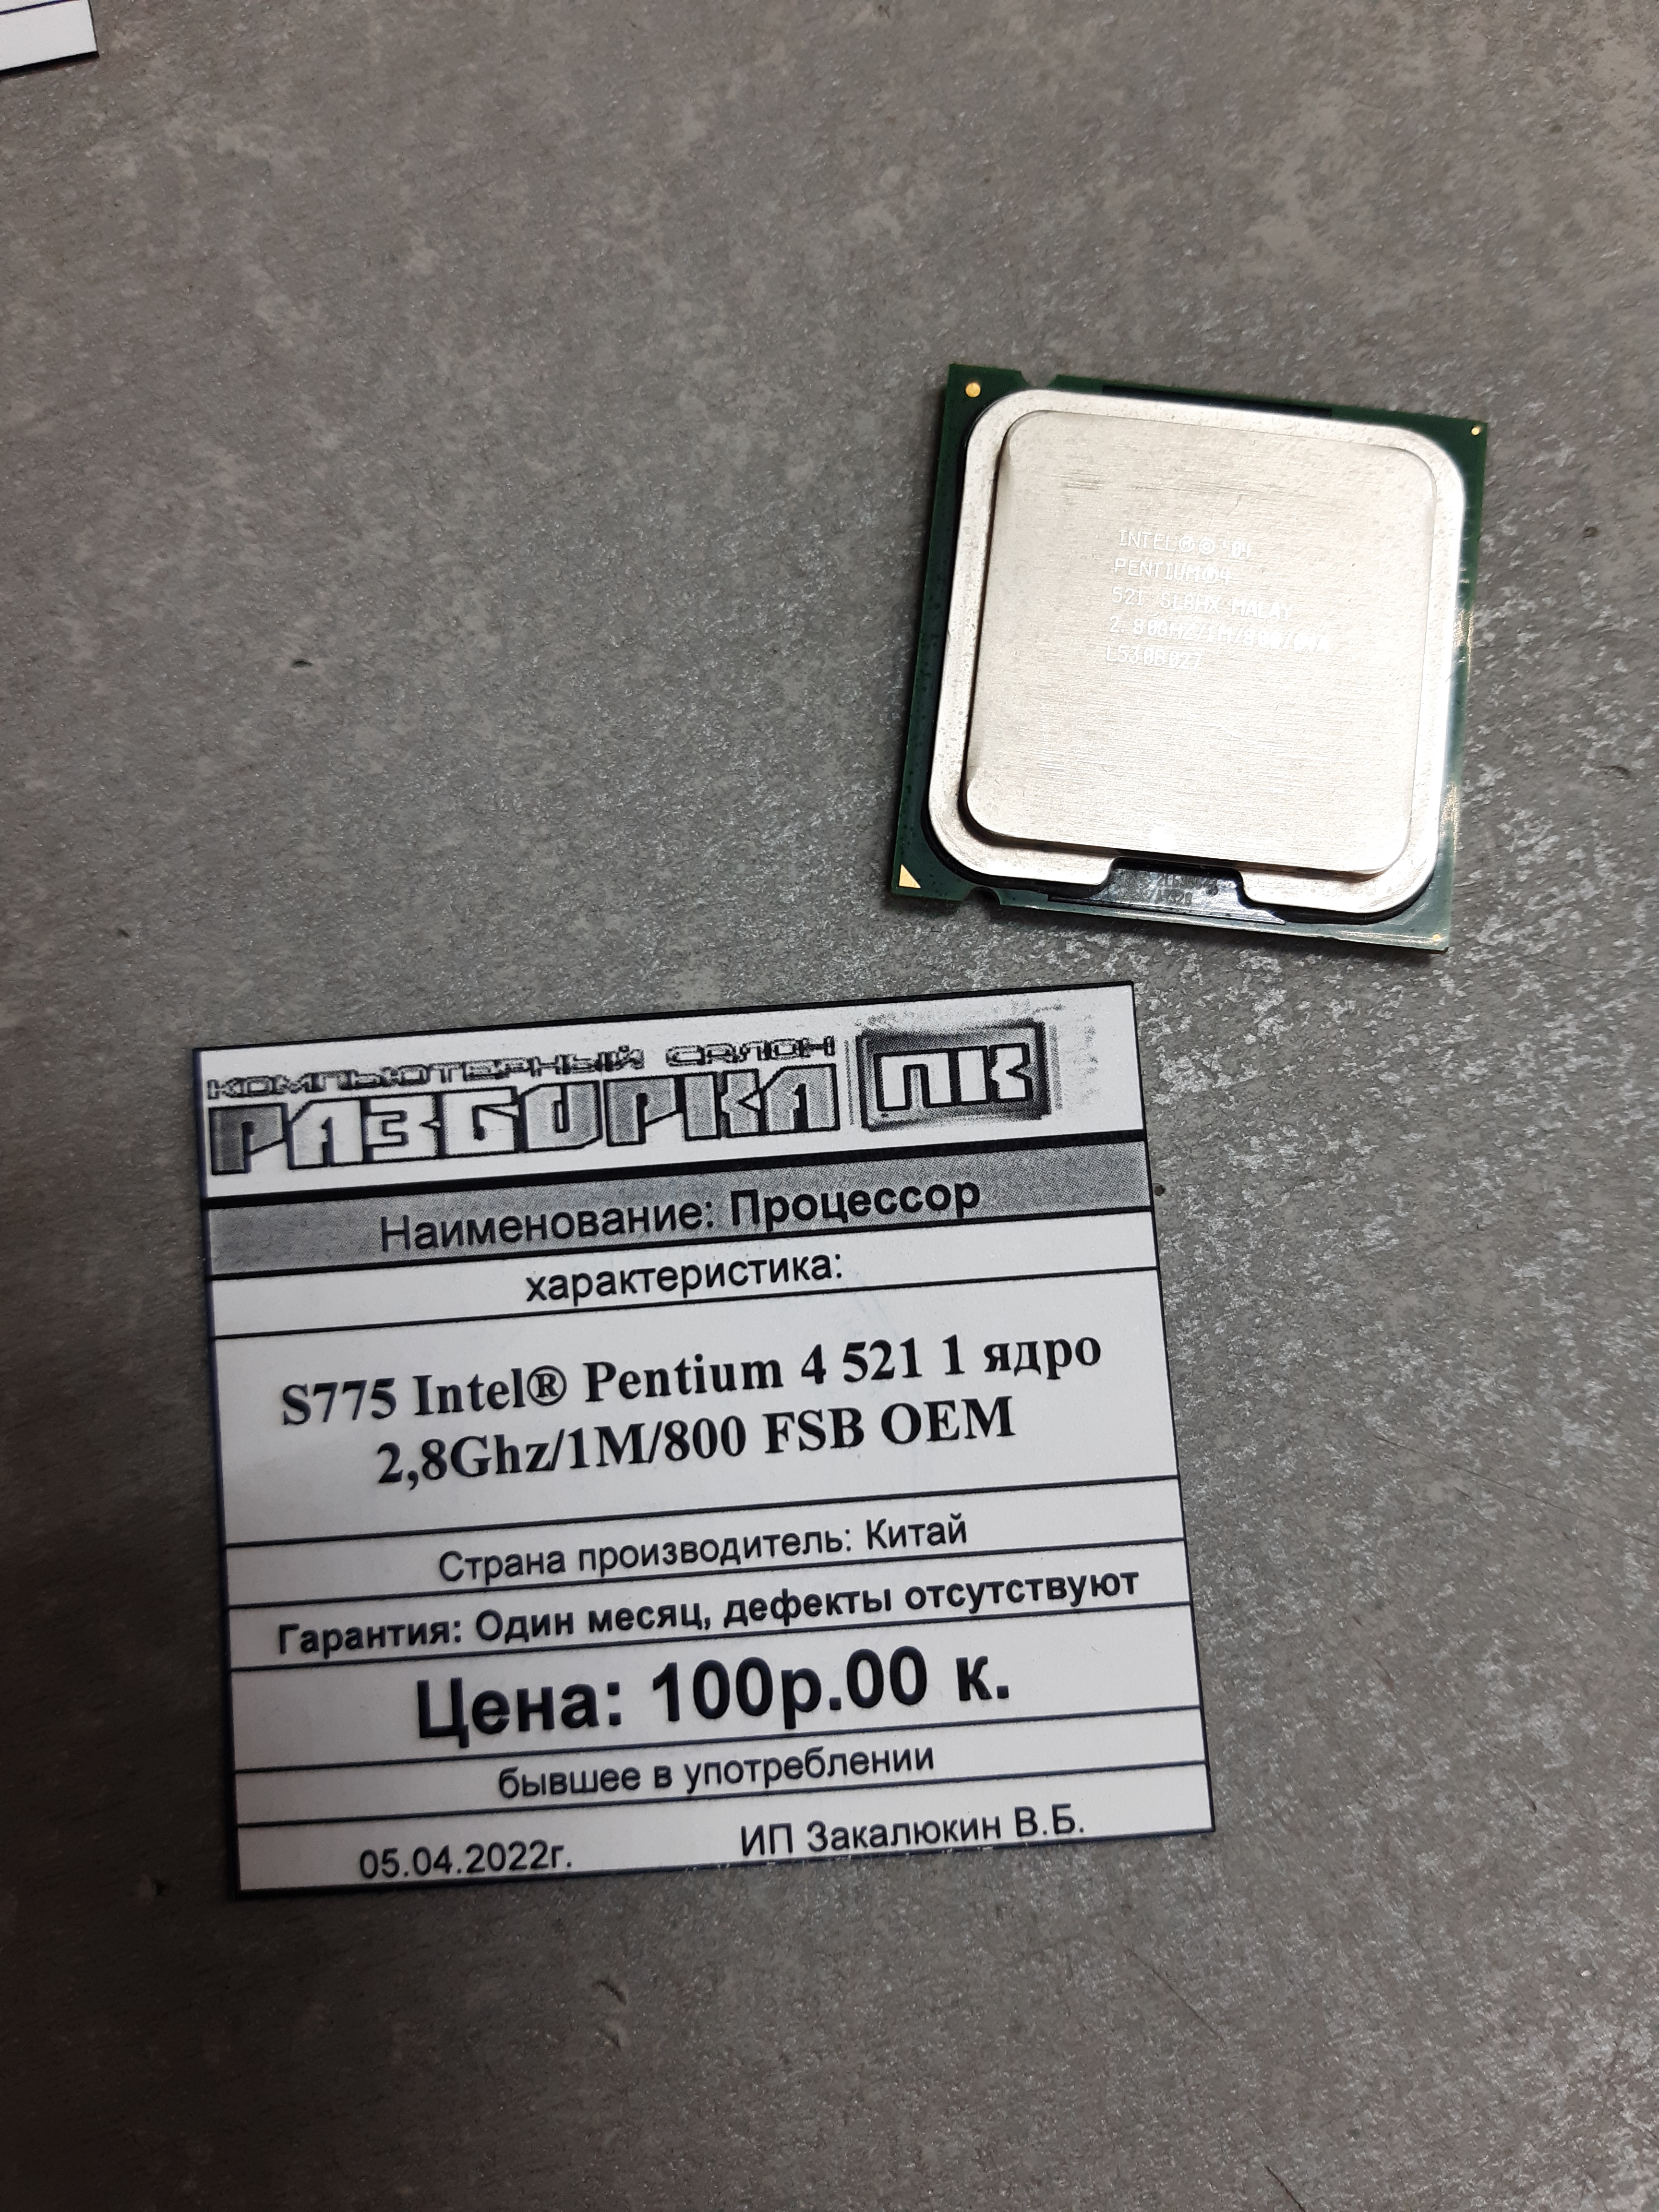 Процессор S775 Intel® Pentium 4 521 1 ядро 2,8Ghz/1M/800 FSB OEM